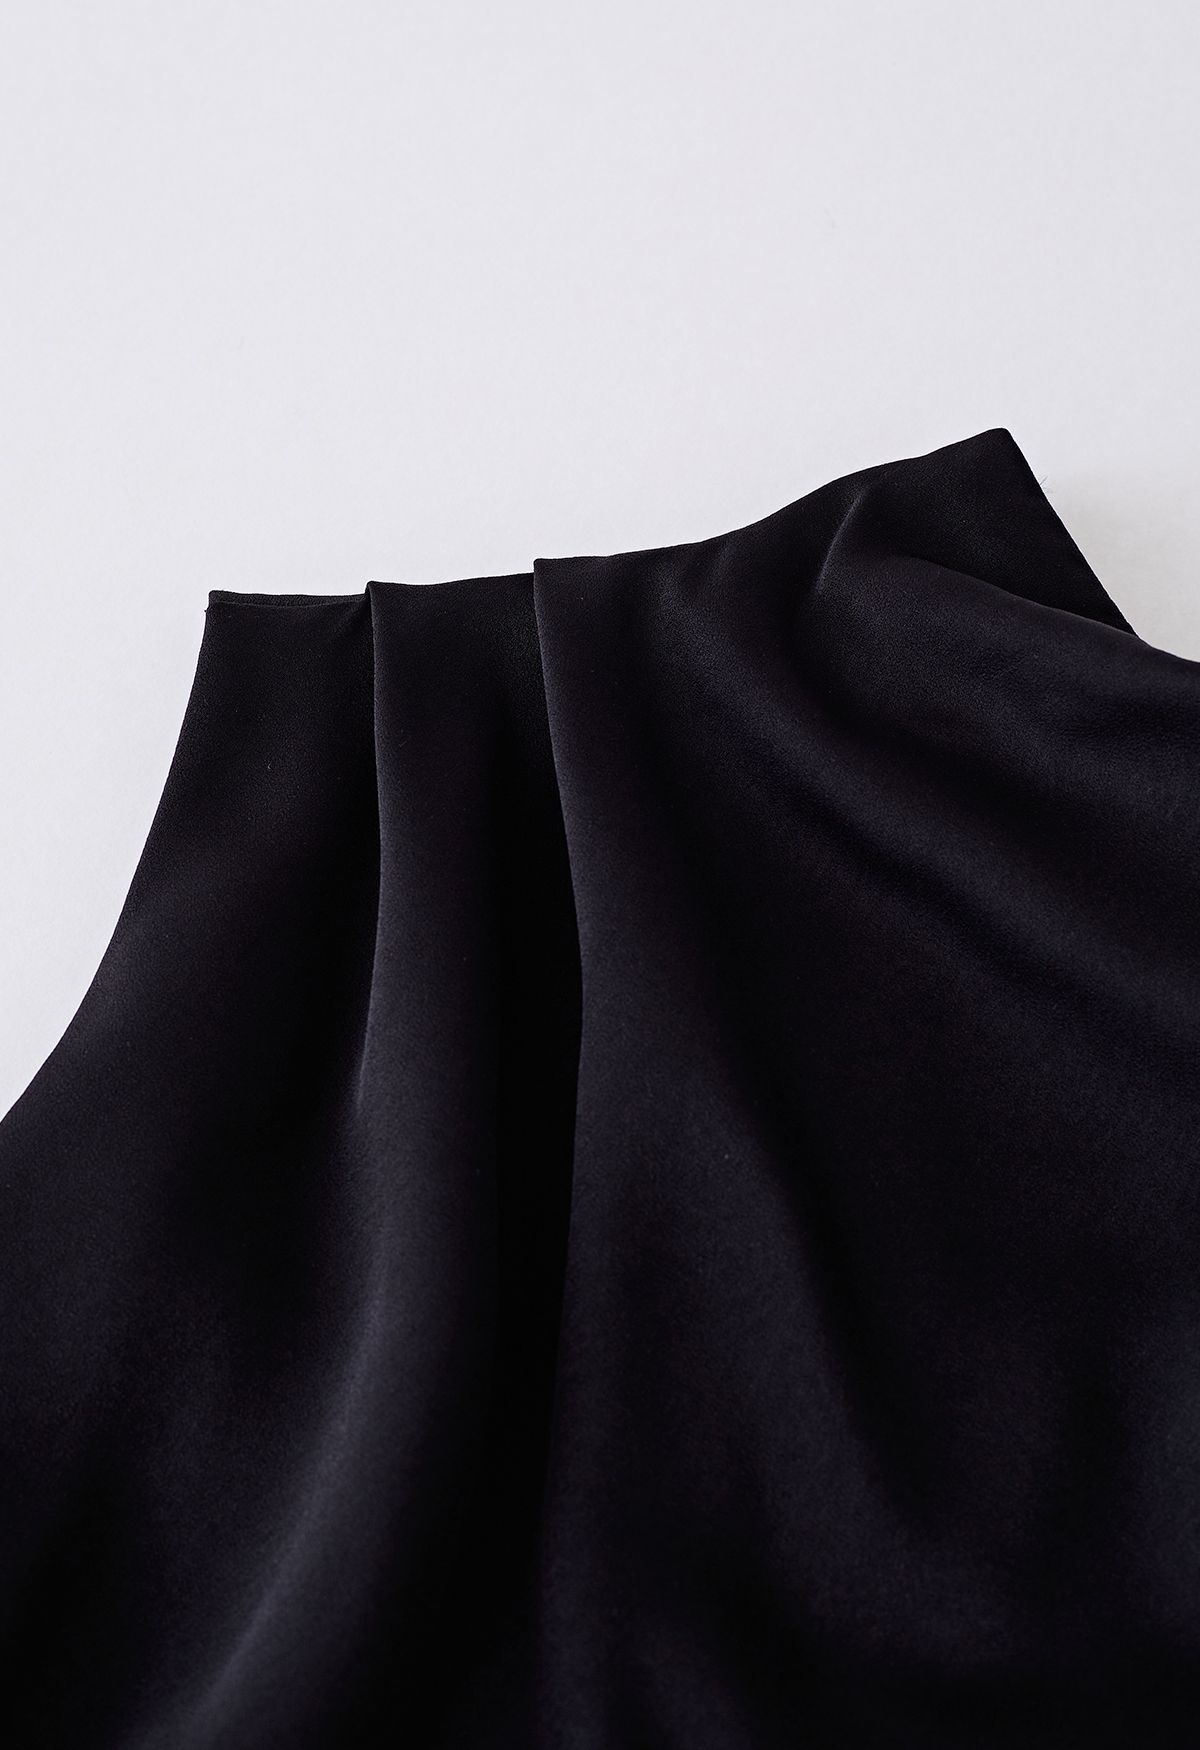 Ärmelloses Kleid mit asymmetrischem Rüschenausschnitt in Schwarz